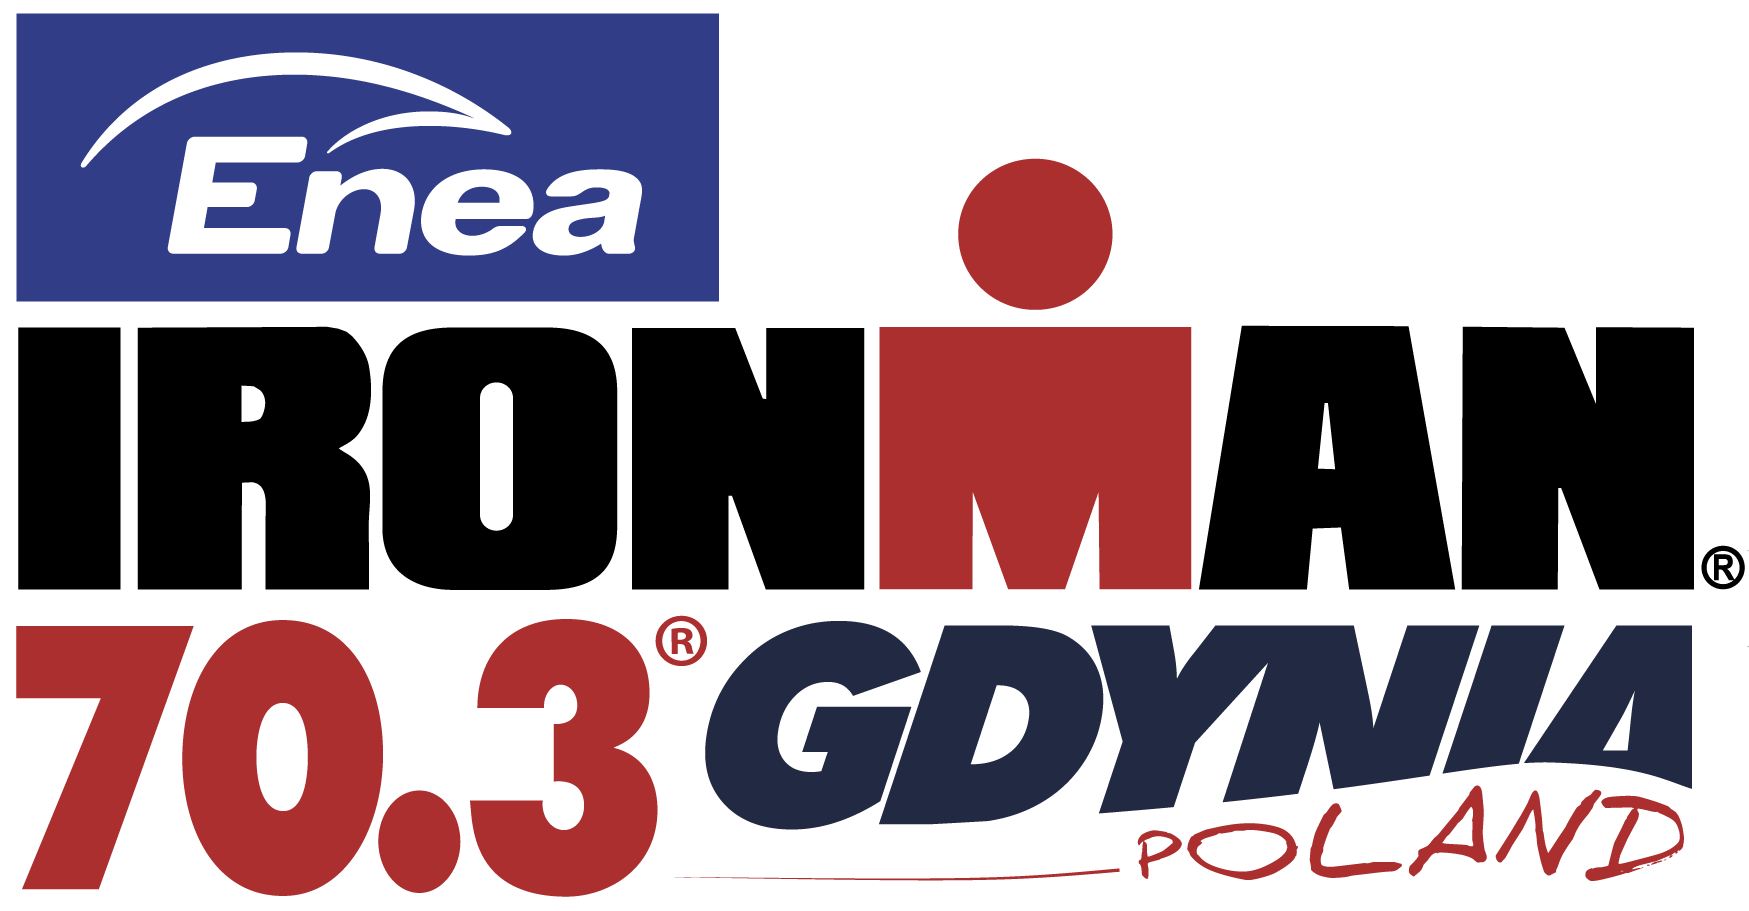 Official Enea IRONMAN 70.3 Gdynia race logo